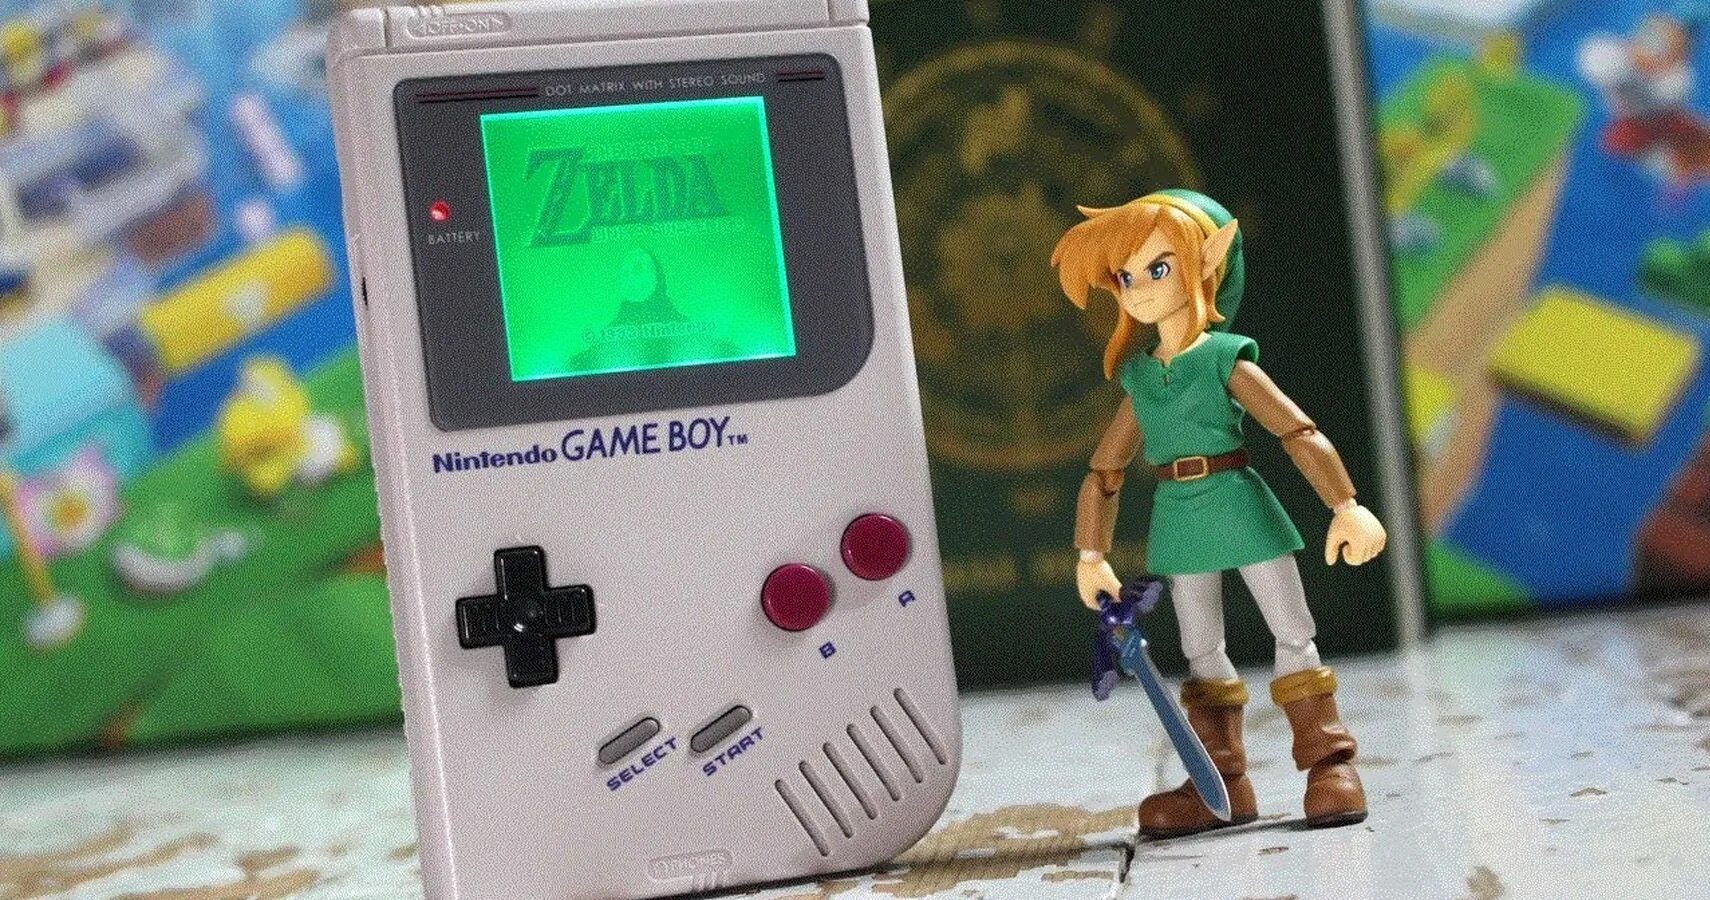 The Legend of Zelda игра Nintendo. Зельда игра на Нинтендо. Nintendo Zelda приставка. Линк Зельда Нинтендо.